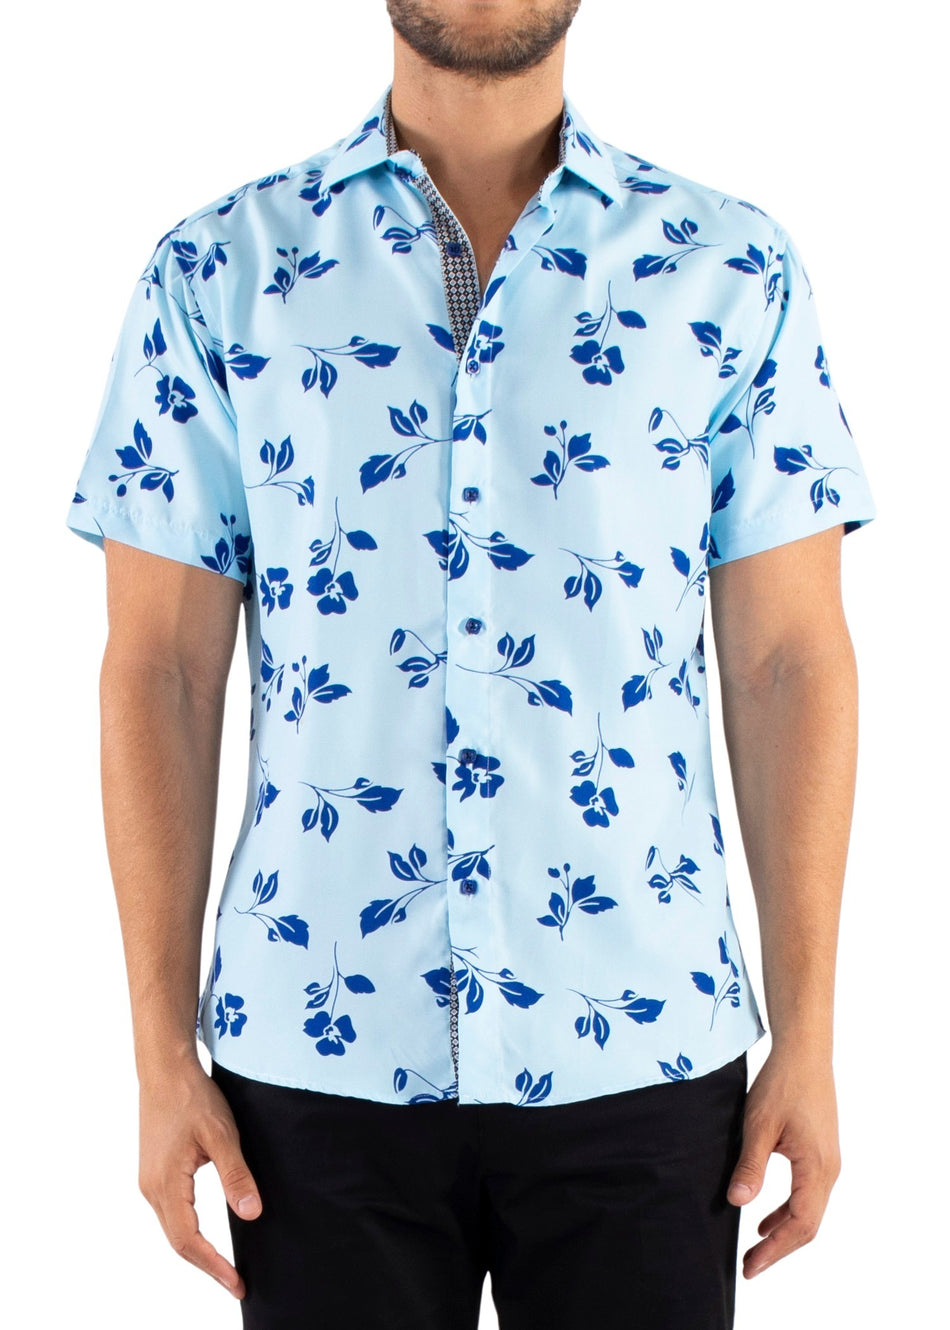 222061 - Light Blue Button Up Short Sleeve Shirt